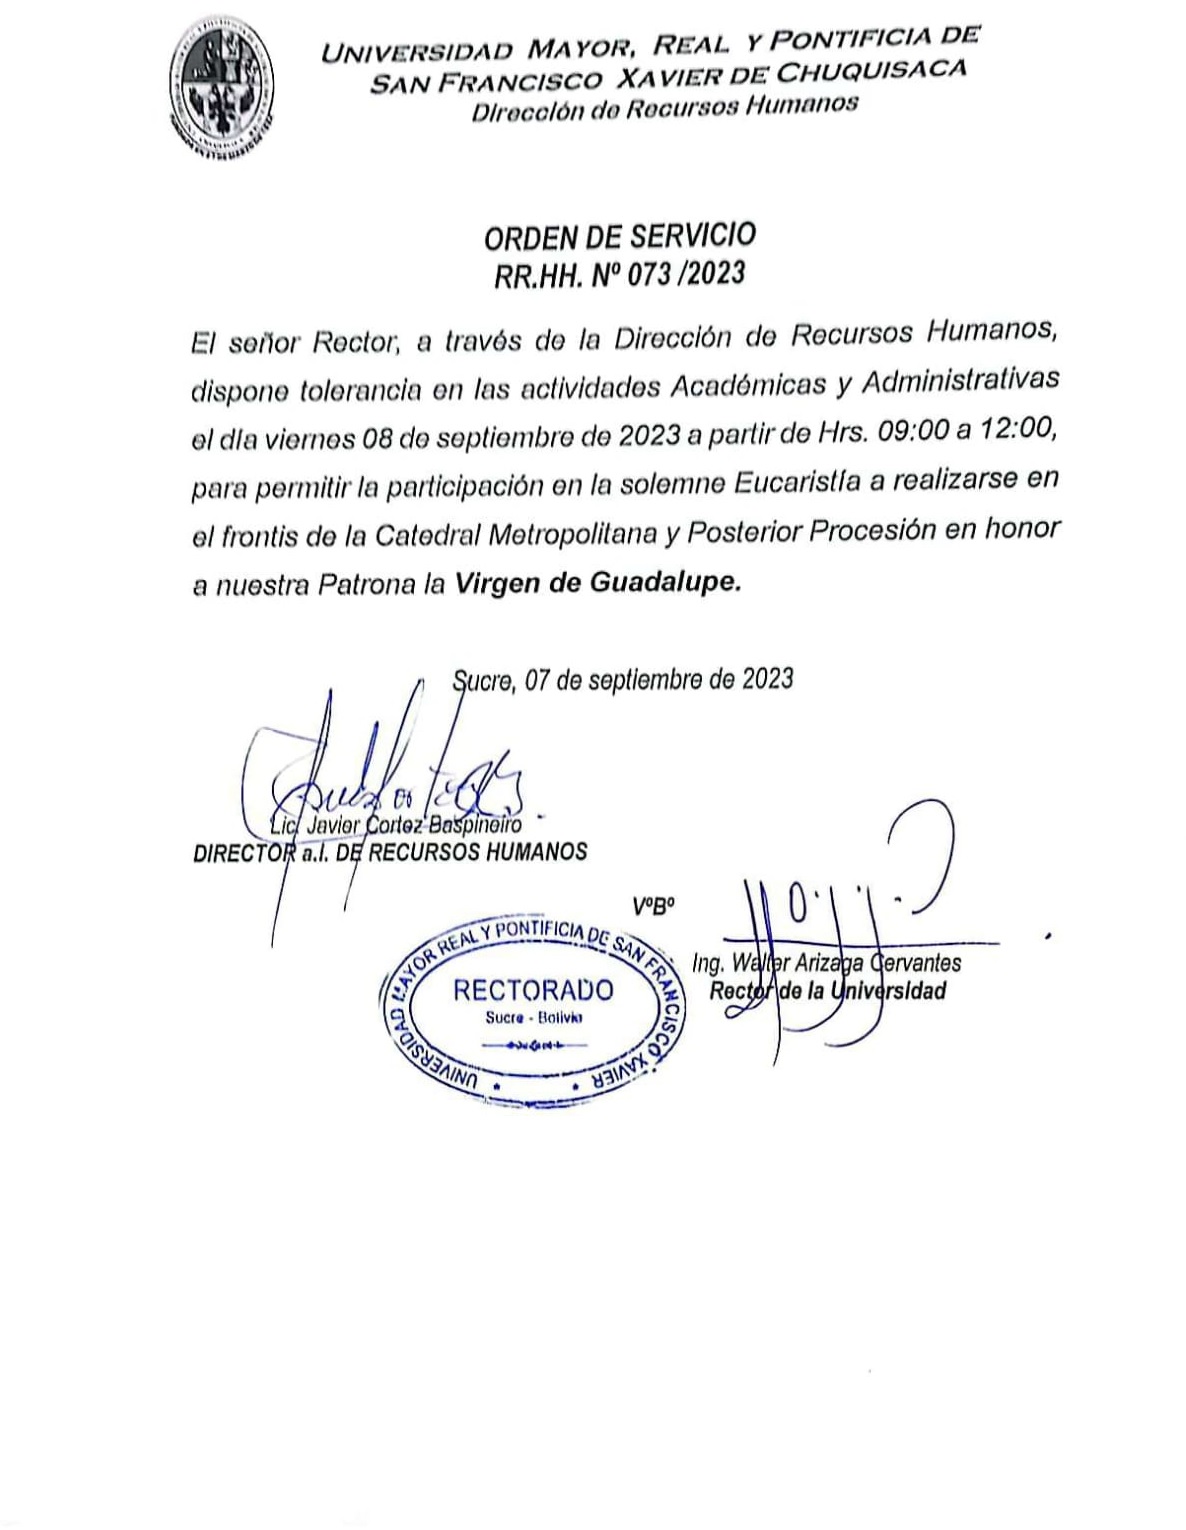 ORDEN DE SERVICIO RR.HH. Nº 073/2023, TOLERANCIA ACTIVIDADES ACADÉMICAS Y ADMINISTRATIVAS.